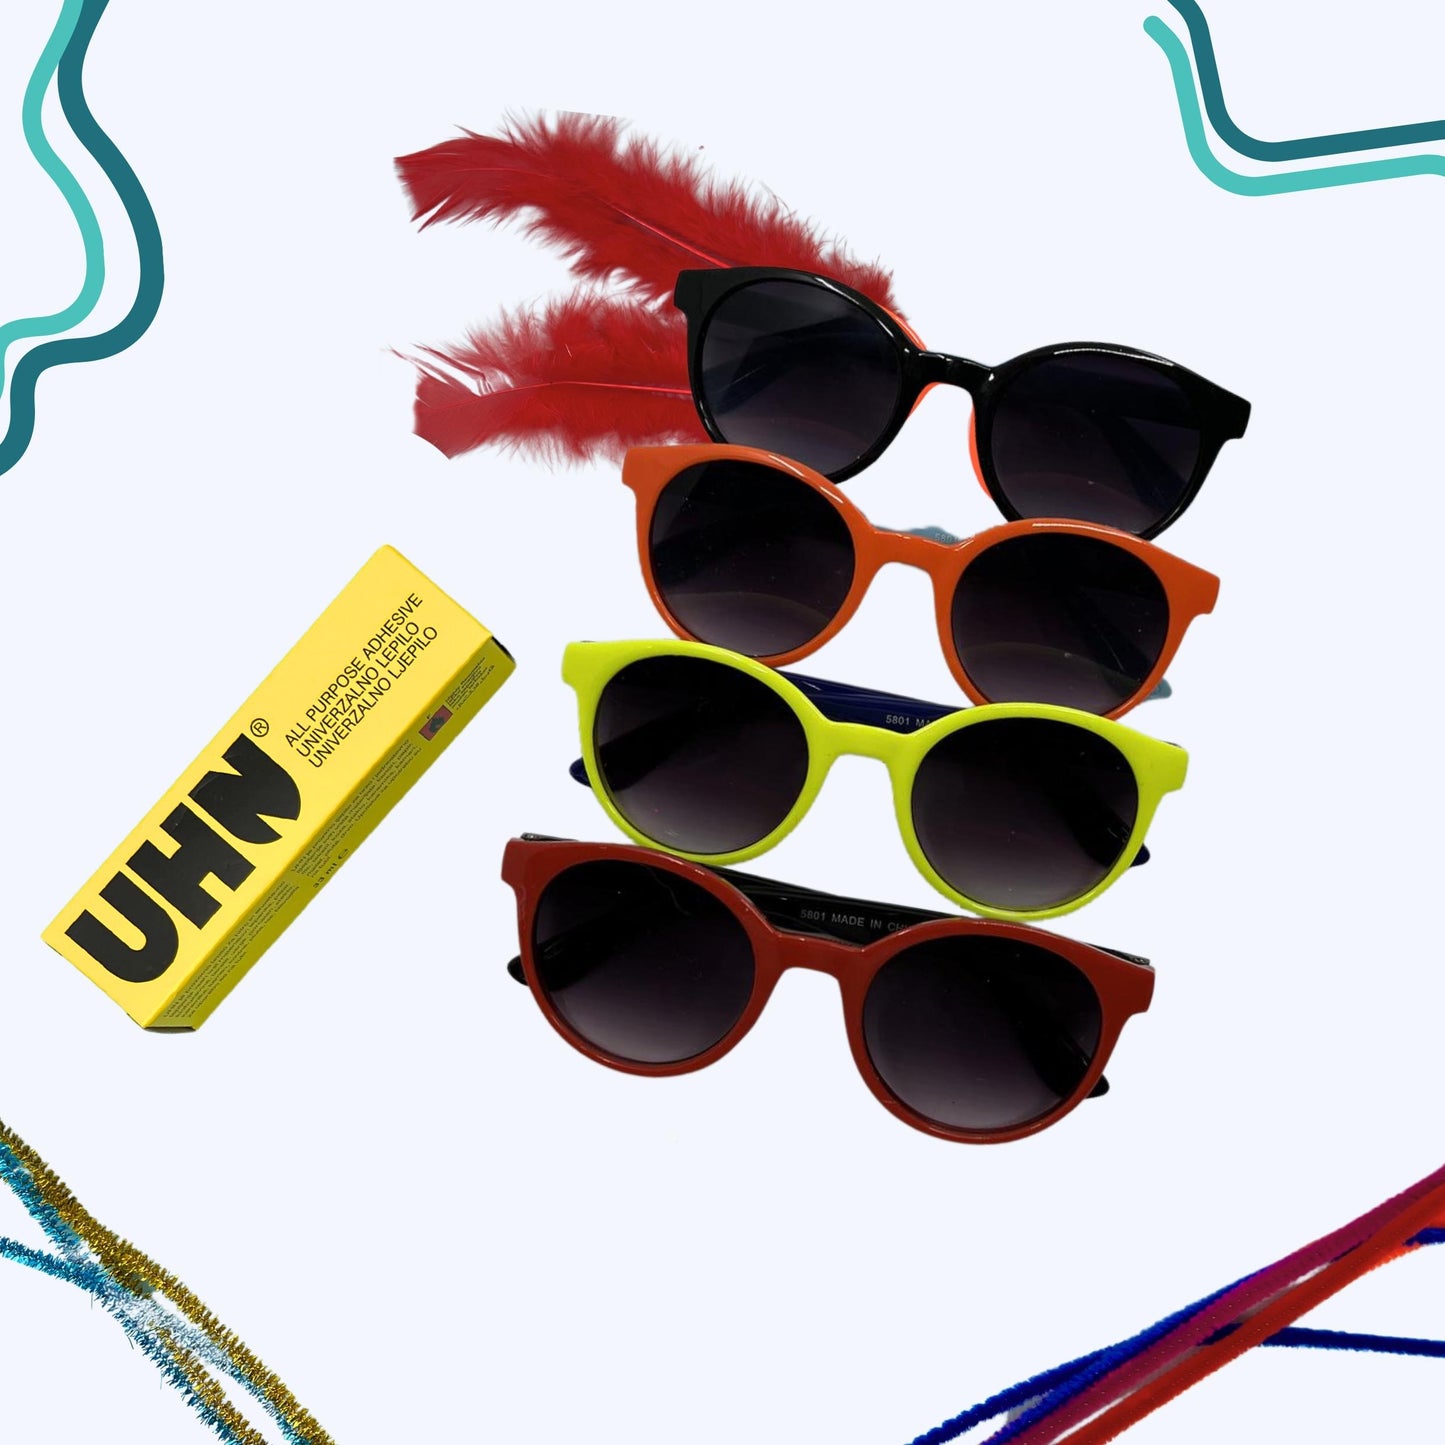 Fuzzy Wire Sunglasses (4 Sunglasses)